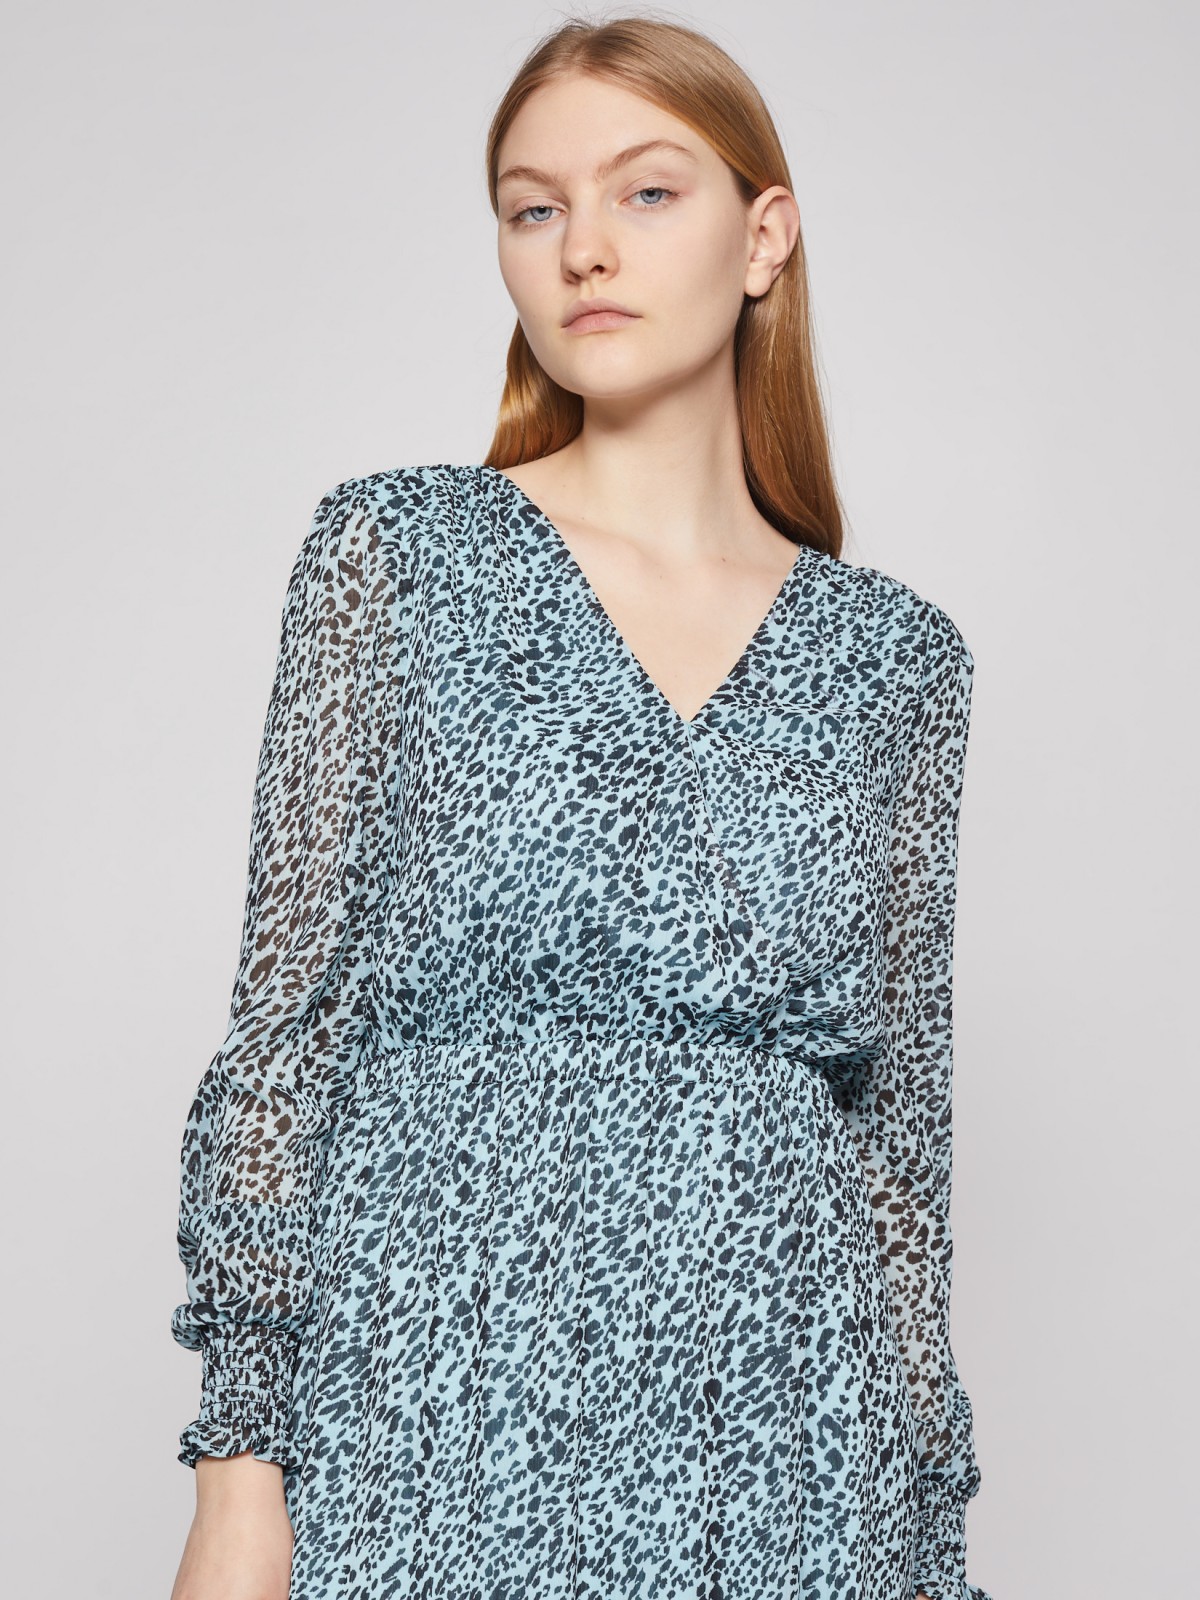 Шифоновое платье с леопардовым принтом zolla 02213824Y183, цвет мятный, размер XS - фото 4